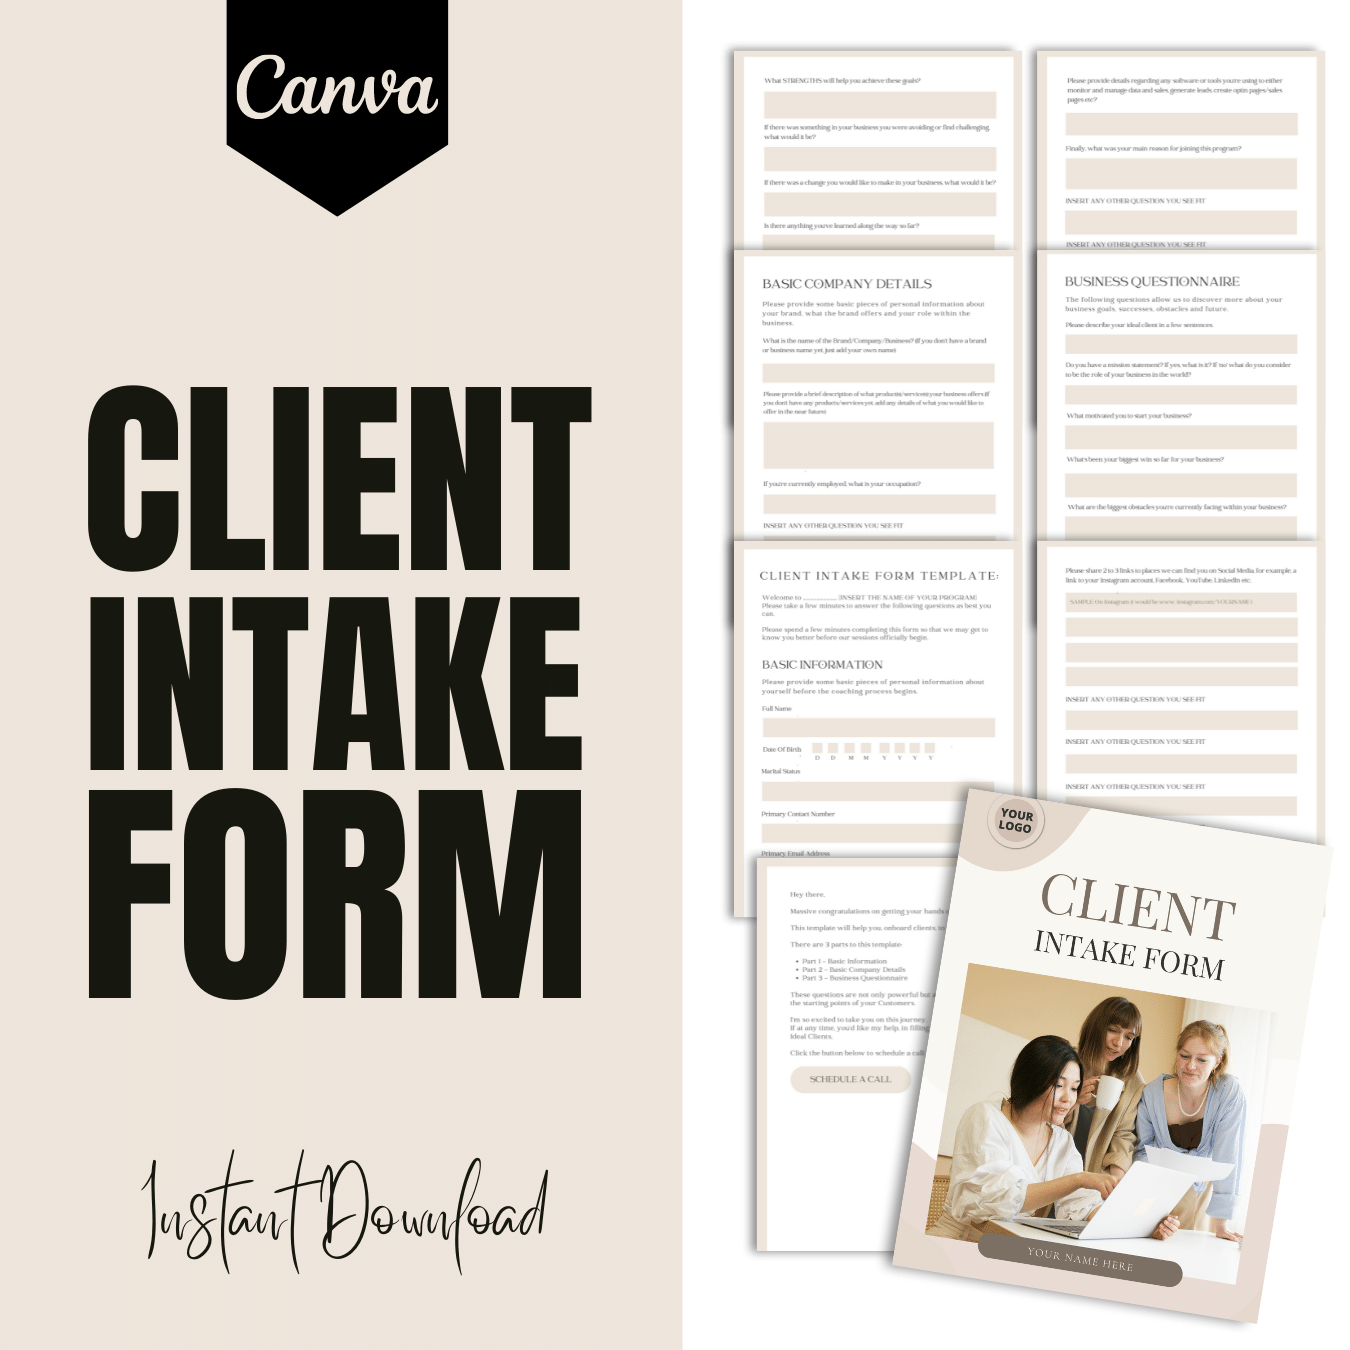 Client Intake Form - Brown scheme